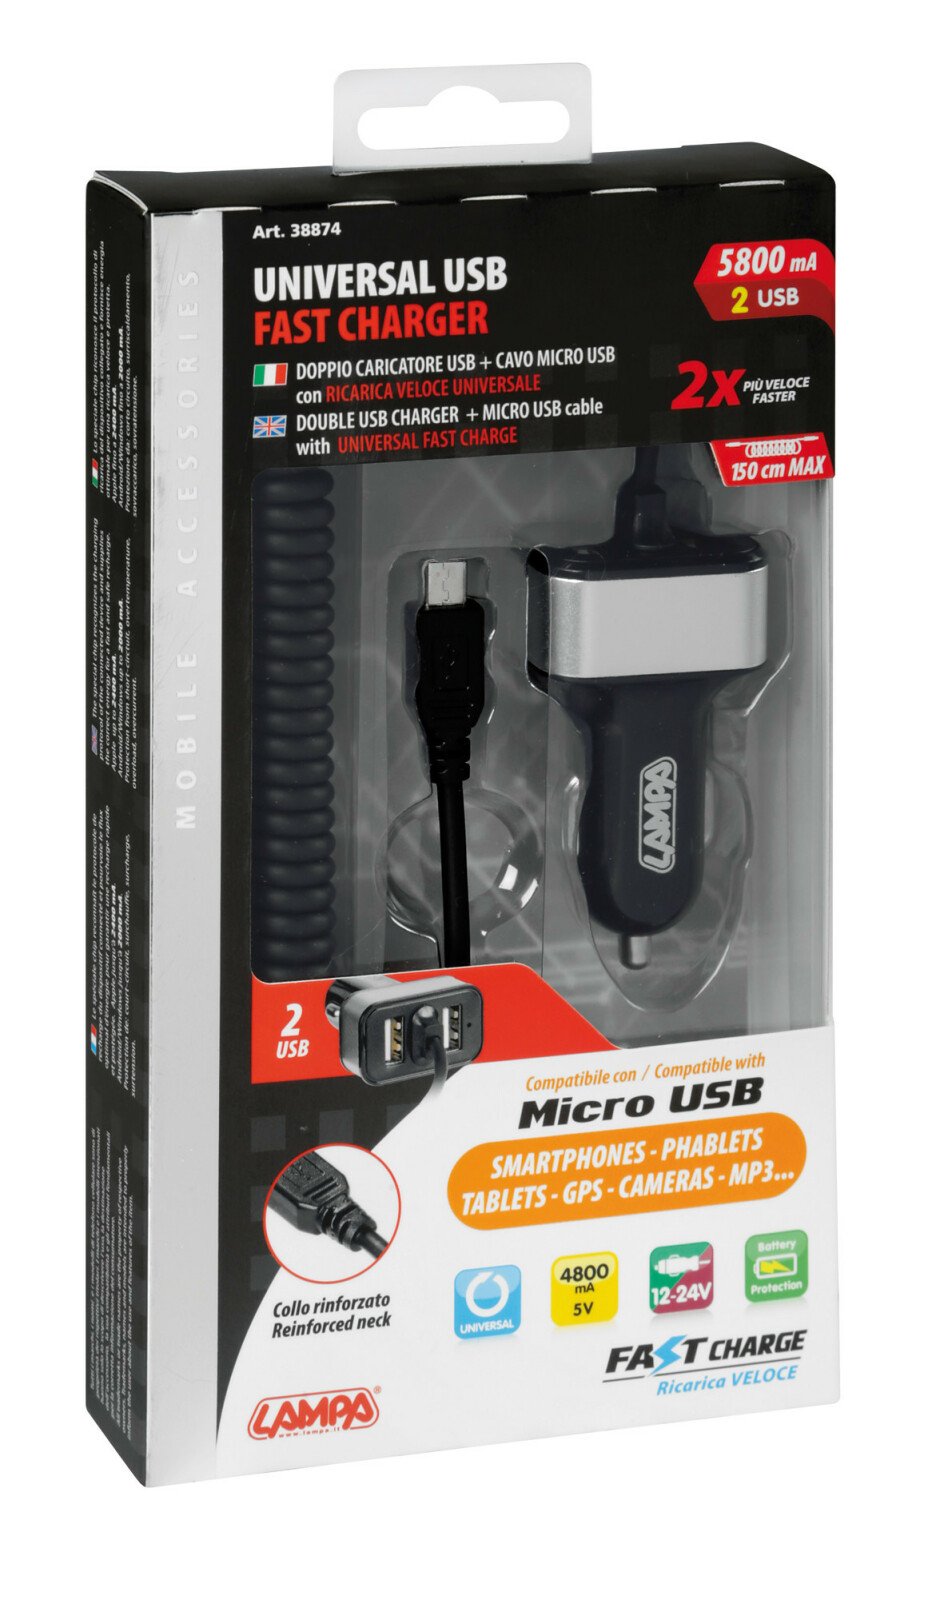 Micro USB gyorstöltő plusz 2 USB port 5800mA 12/24V thumb